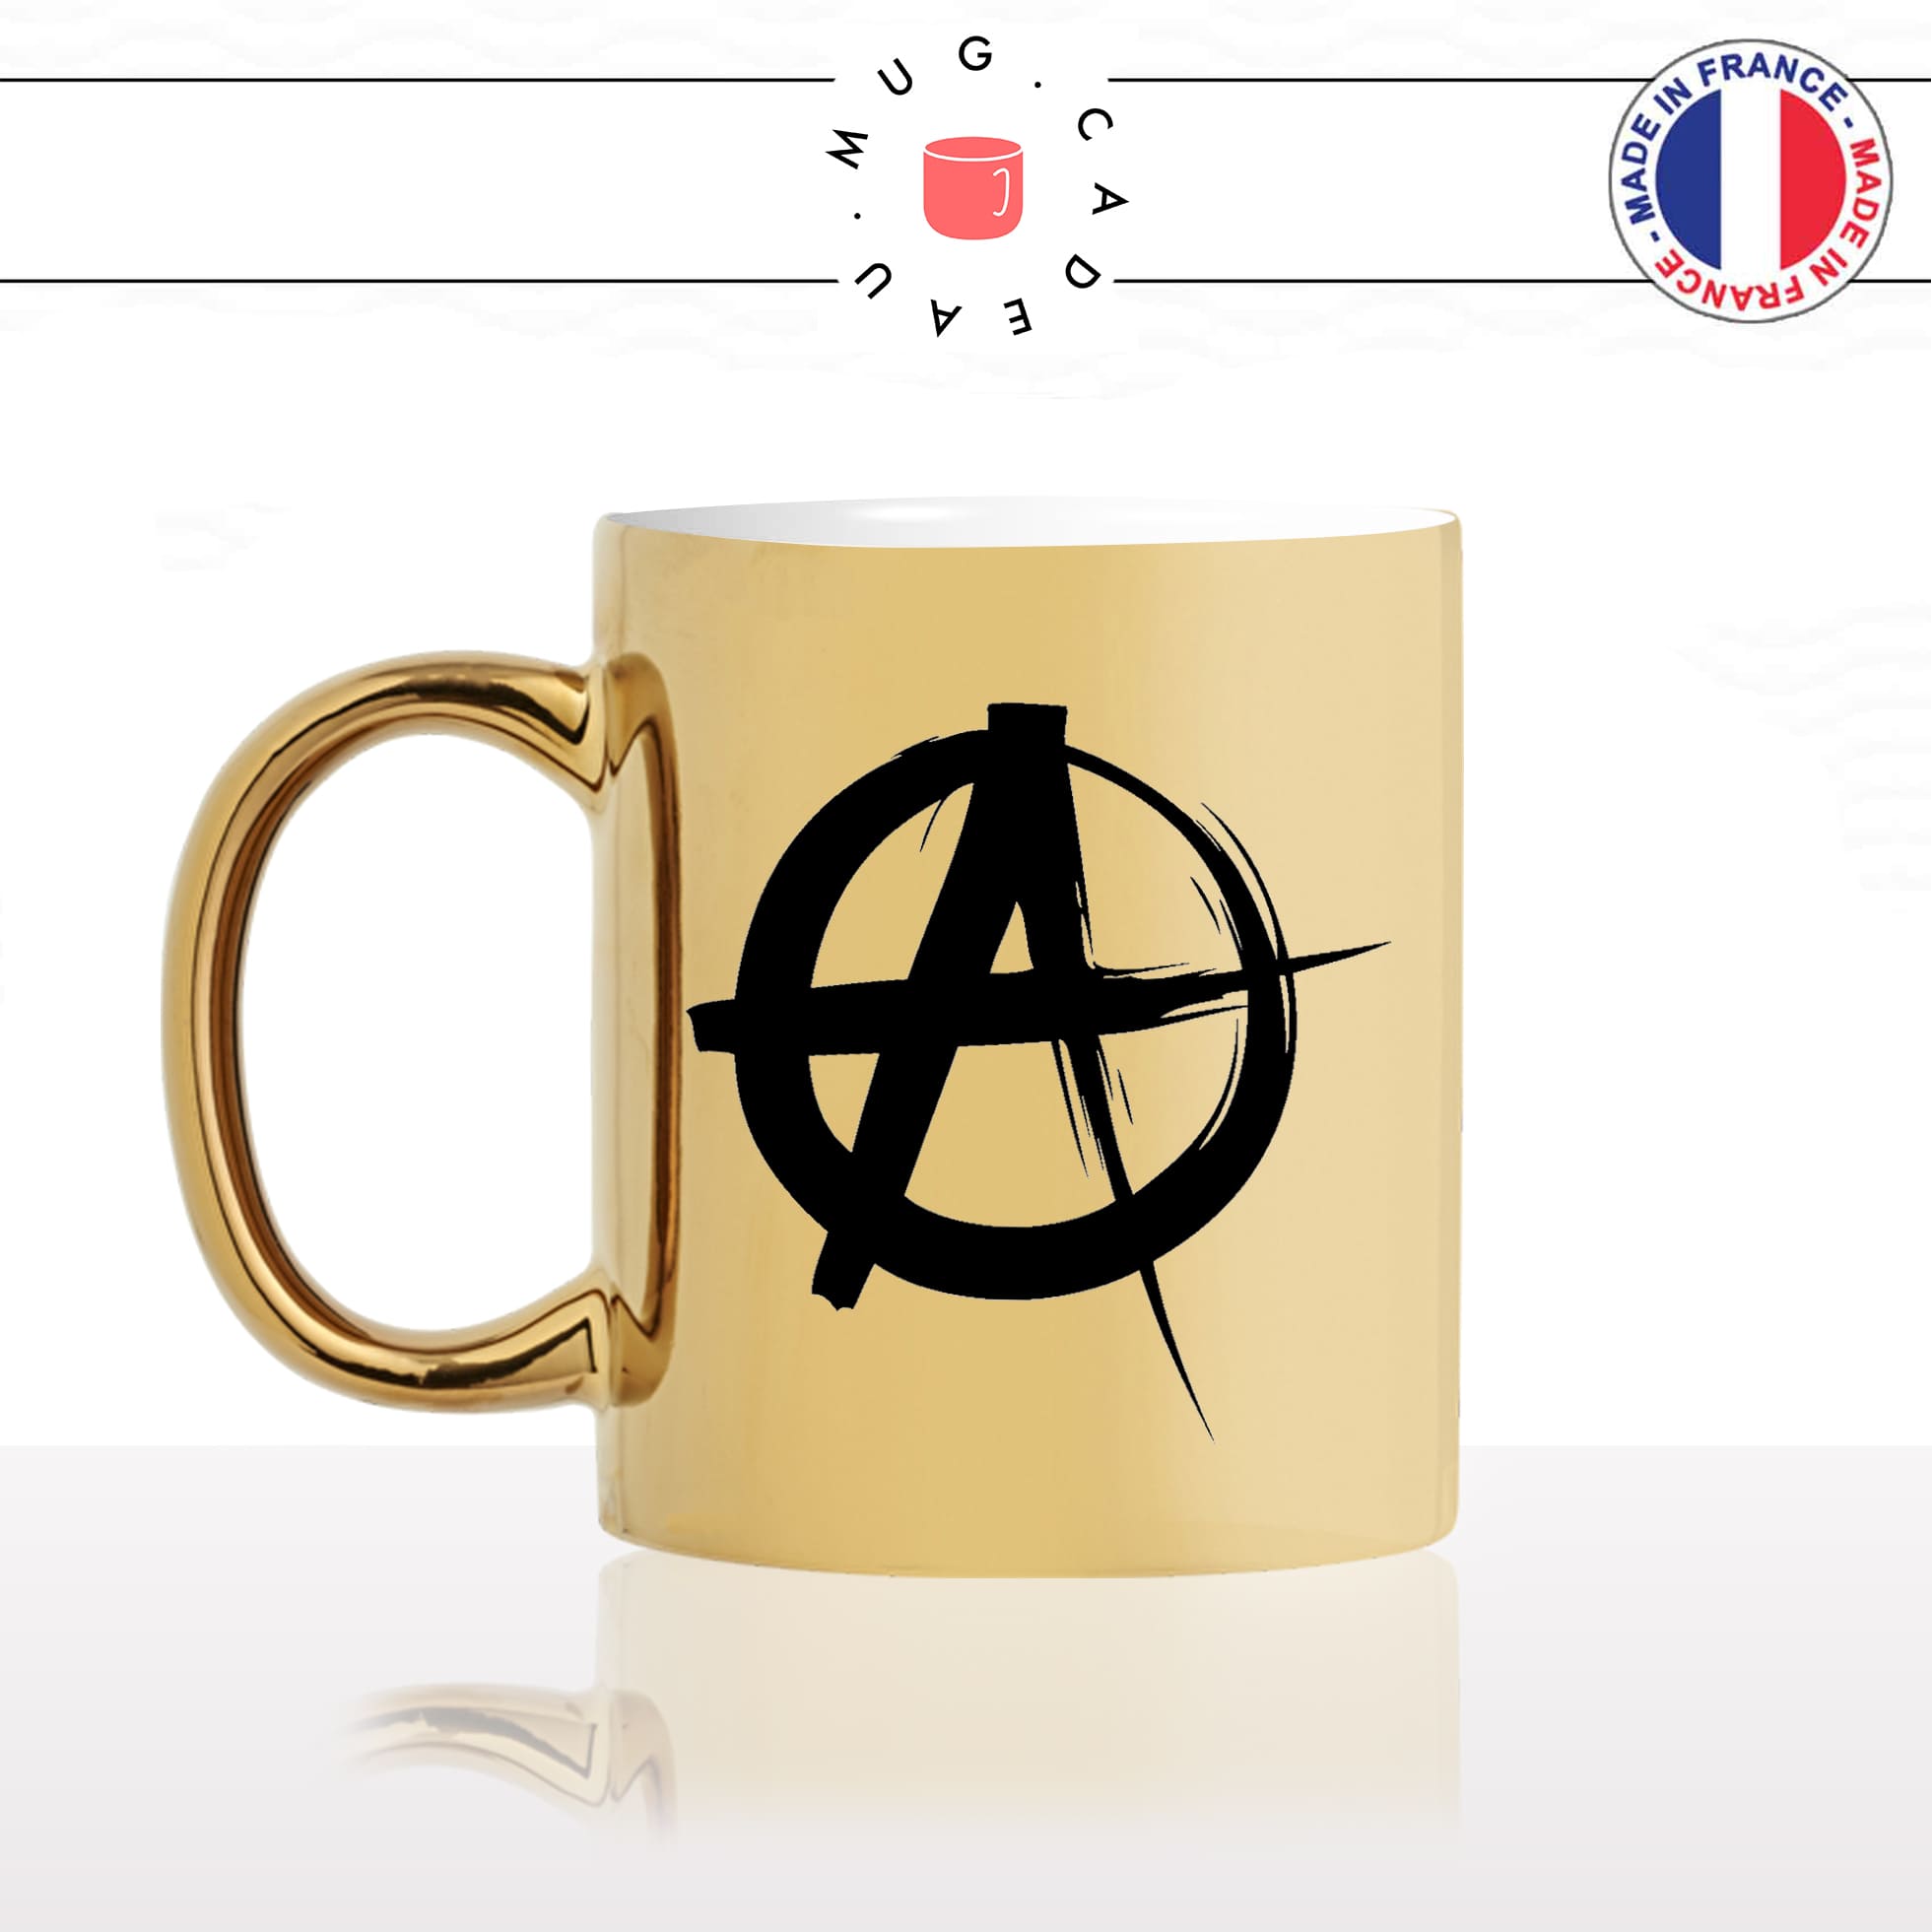 mug-or-doré-gold-tasse-idée-cadeau-personnalisé-anarchiste-anarchy-anarchie-politique-black-blocks-anti-fa-societé-fun-drole-offrir-original